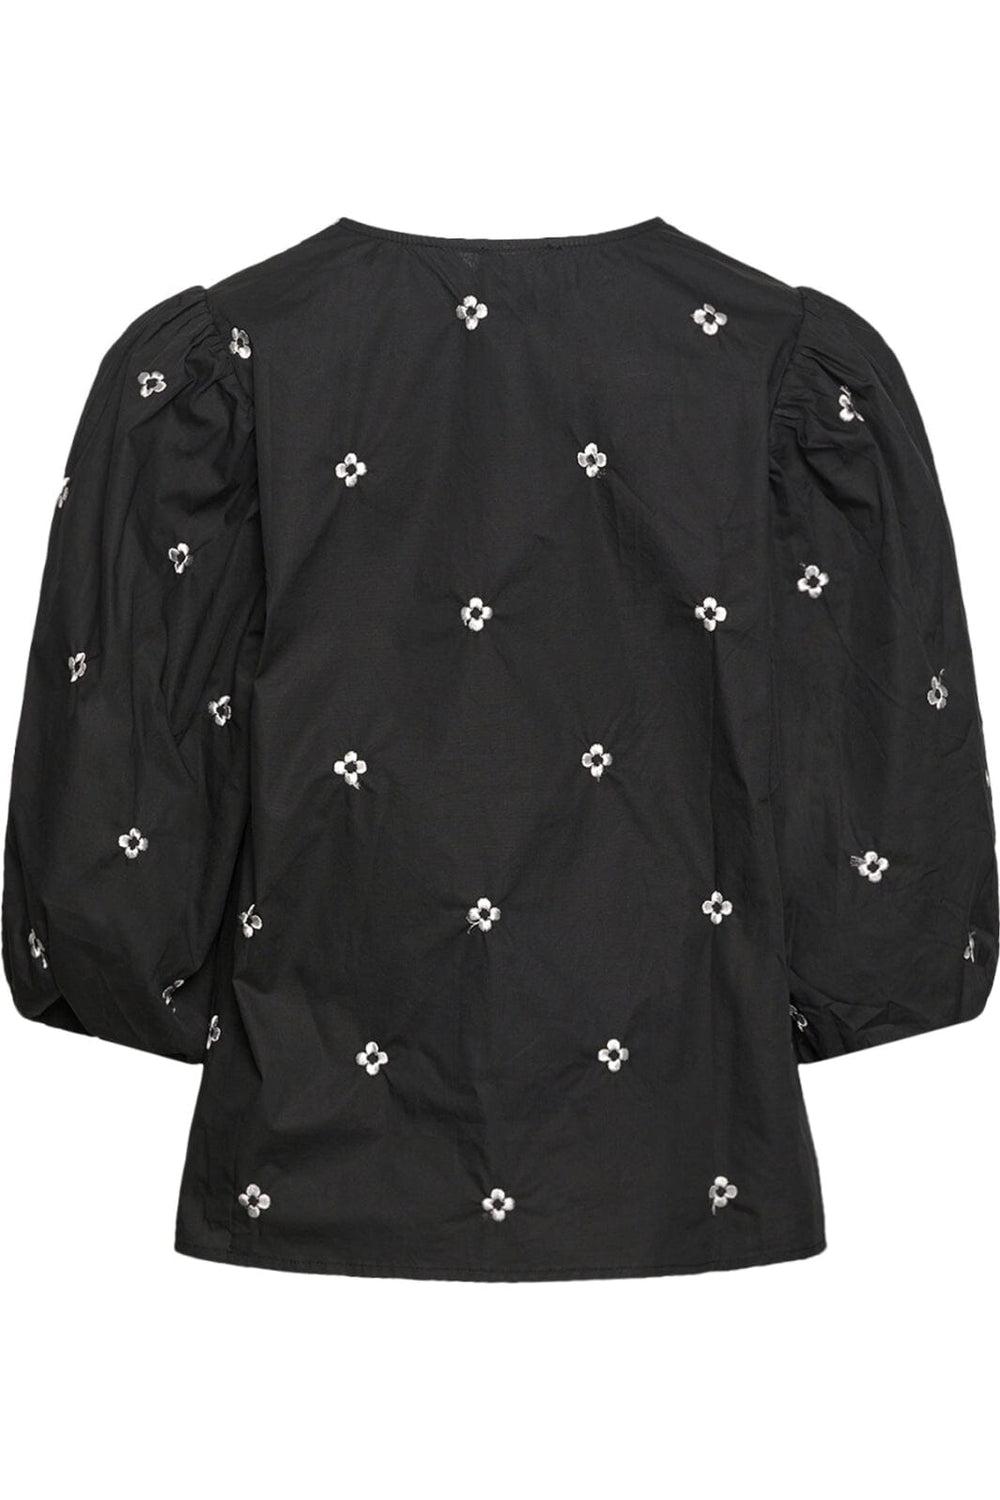 Noella - Sun Shirt - 004 Black Skjorter 